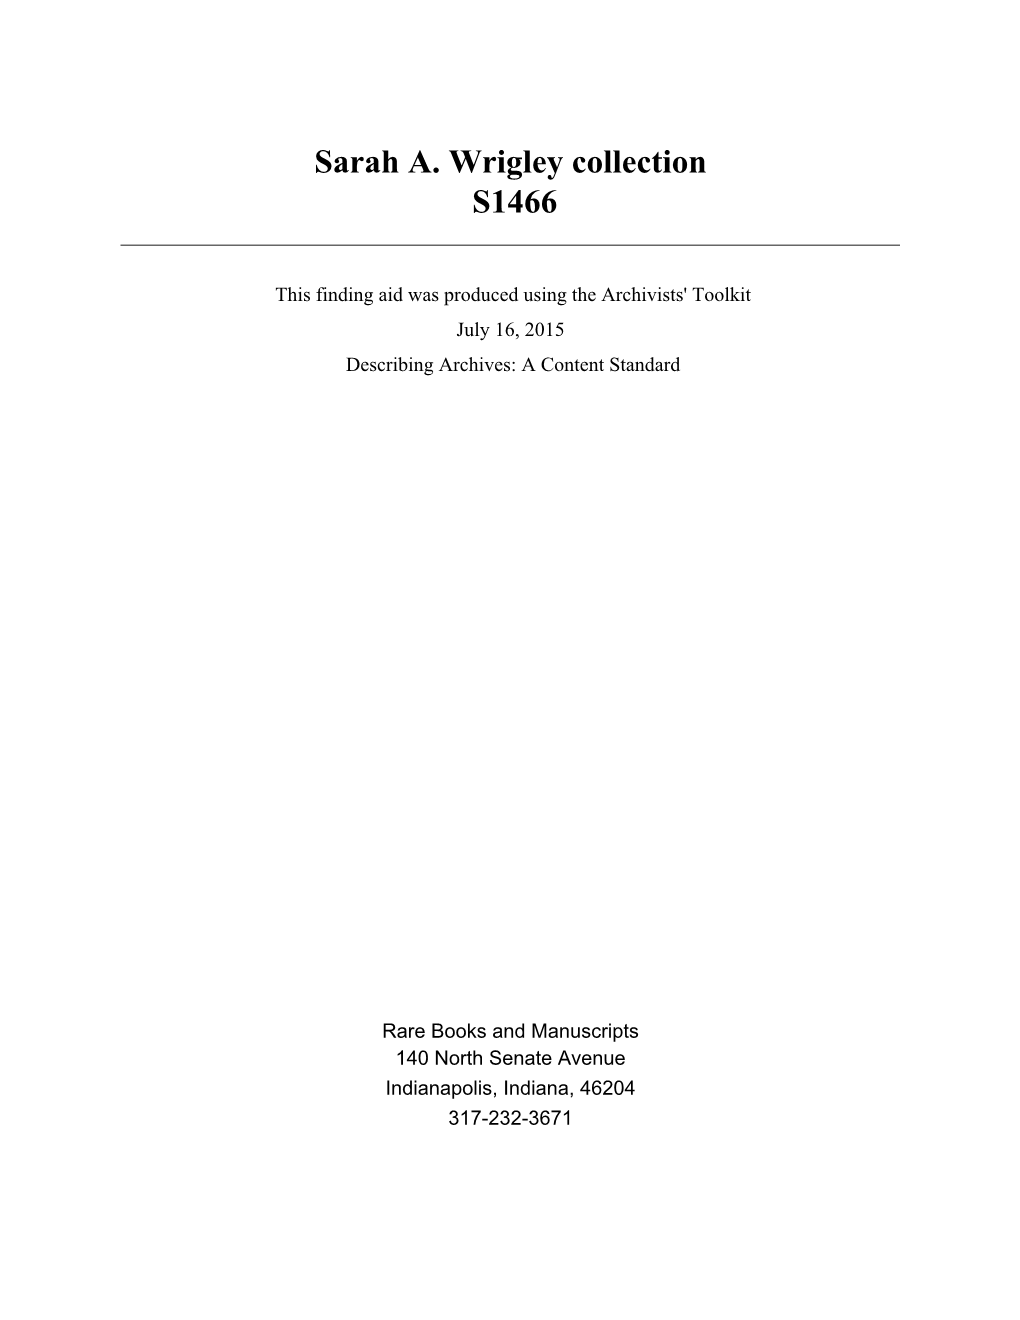 Sarah A. Wrigley Collection S1466